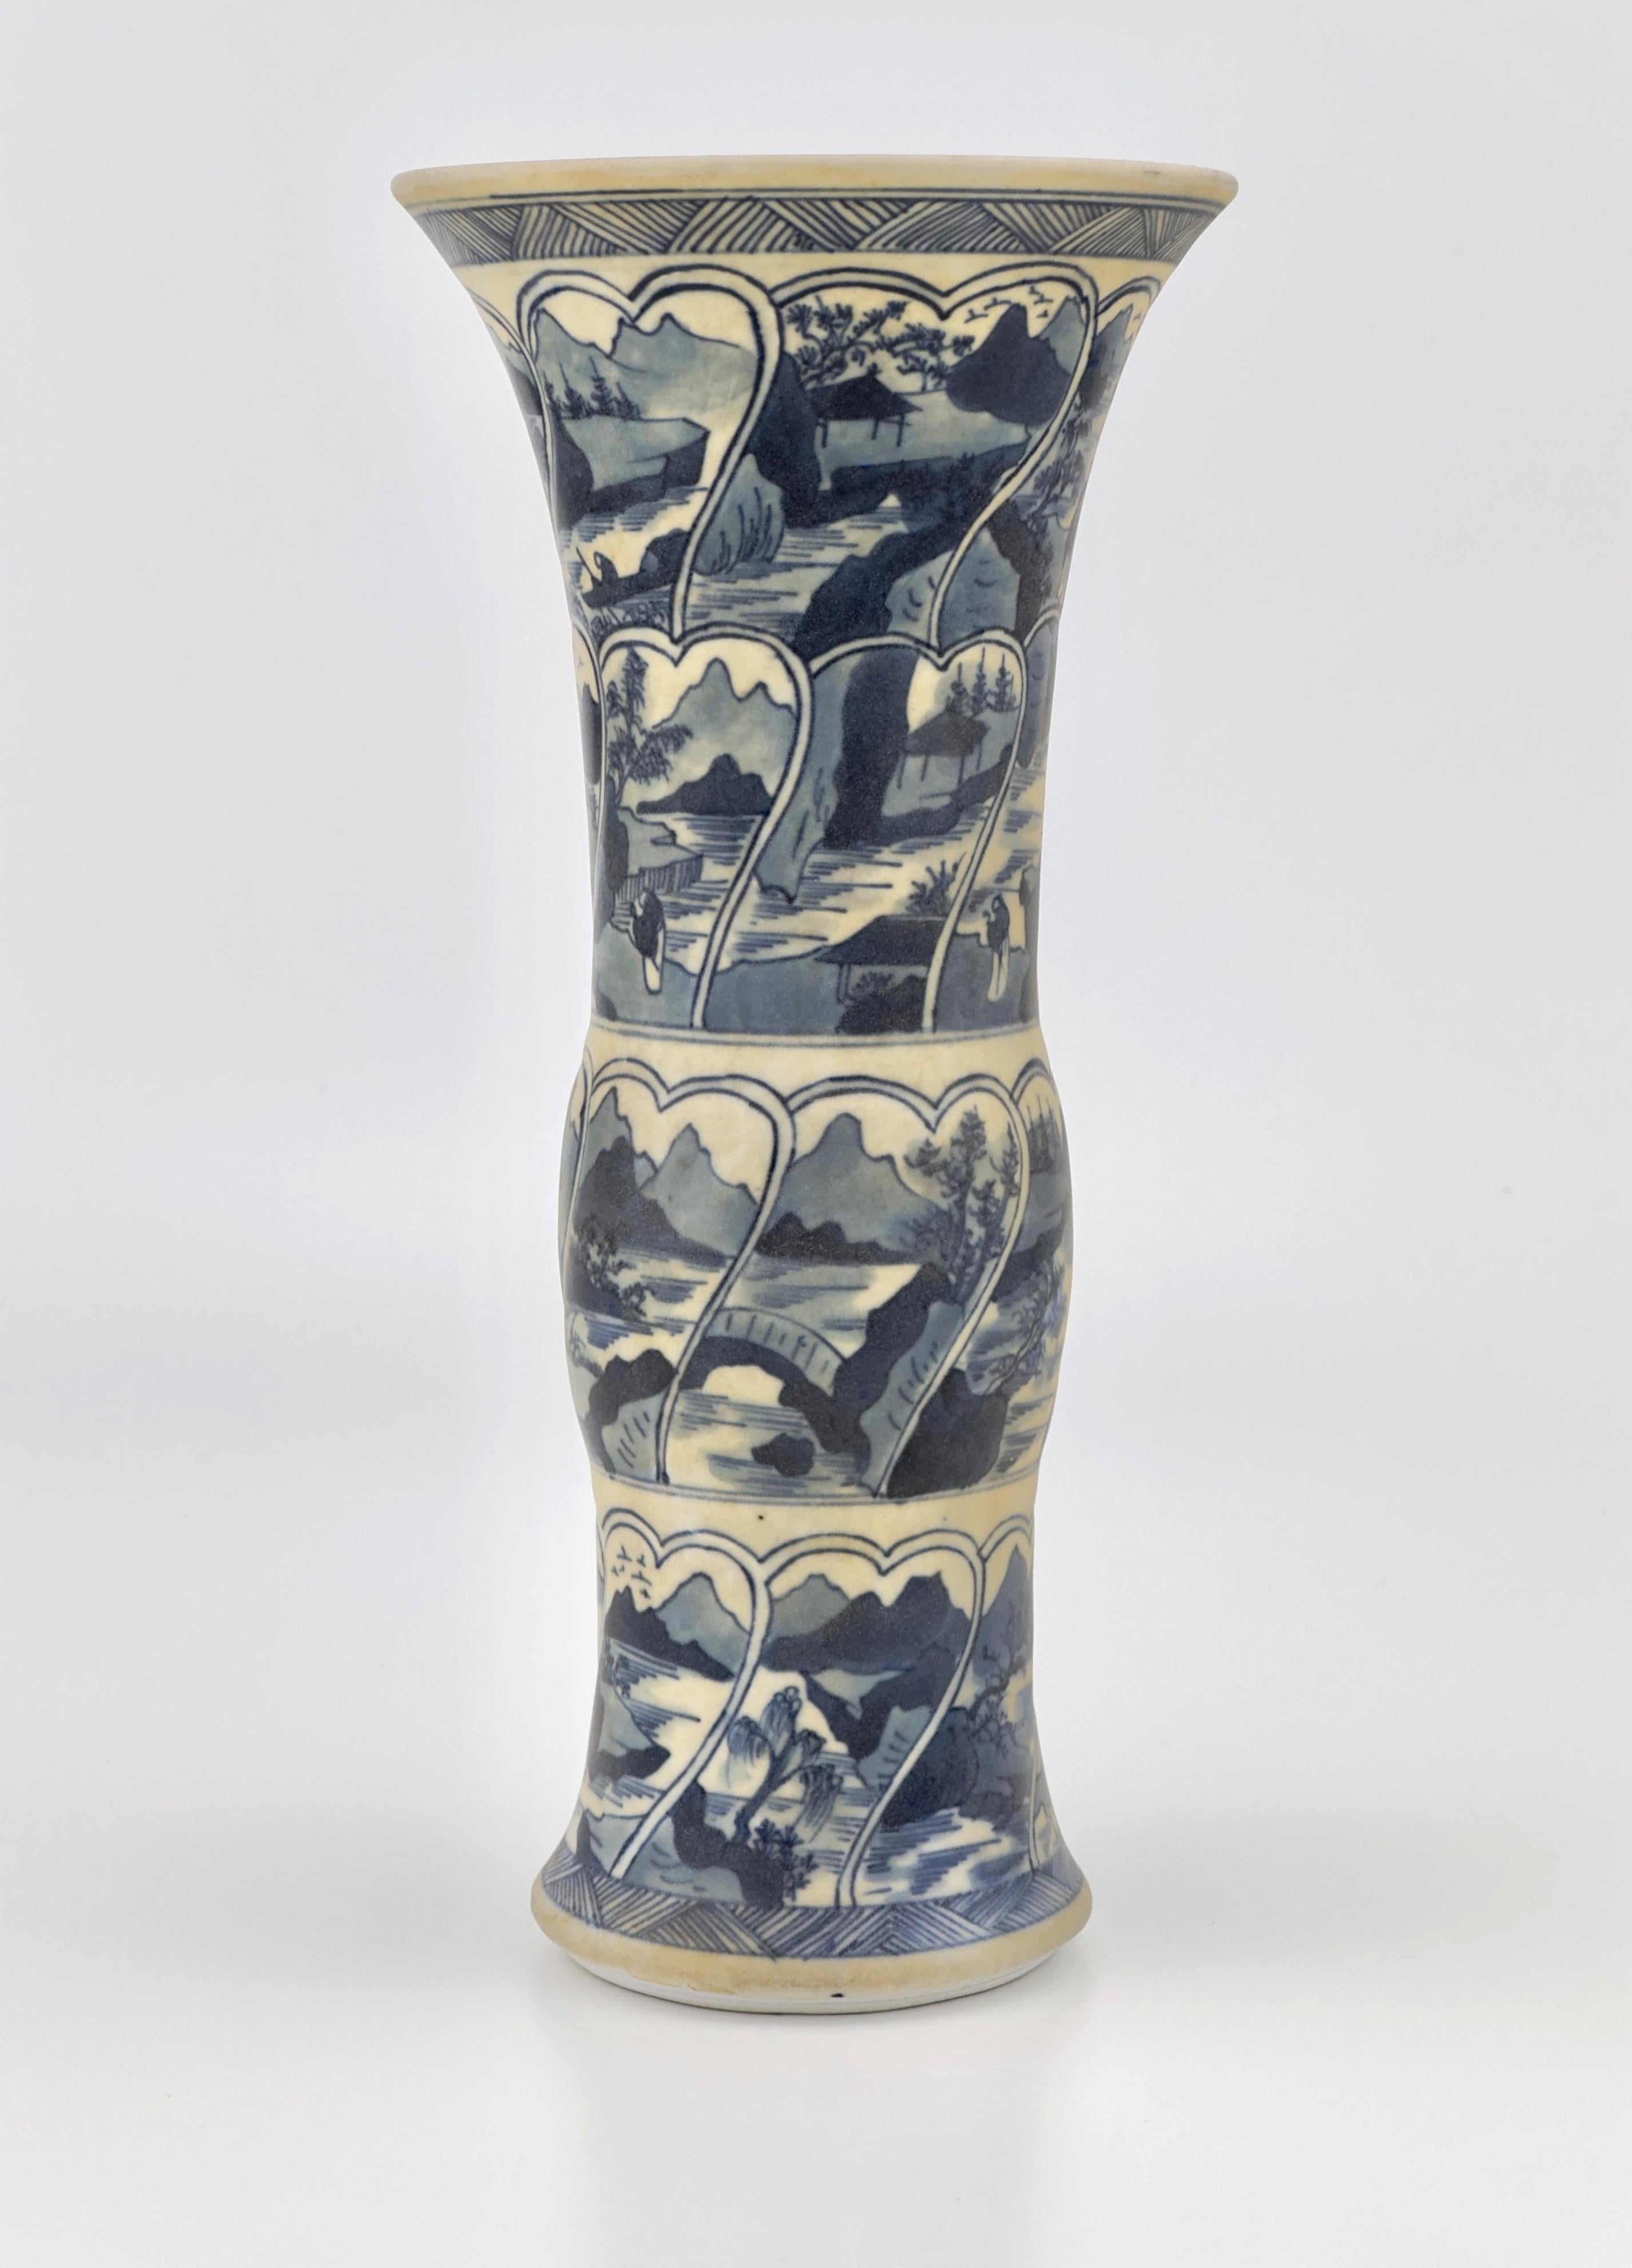 Eine attraktive GU-Vase, handbemalt in Kobaltblau mit typischen Kangxi-Flusslandschaftsbildern, die durch linierte Bordüren voneinander getrennt sind. Es wird vermutet, dass sich die Oberfläche gelb verfärbt hat, weil sie lange Zeit im Meeresschlamm